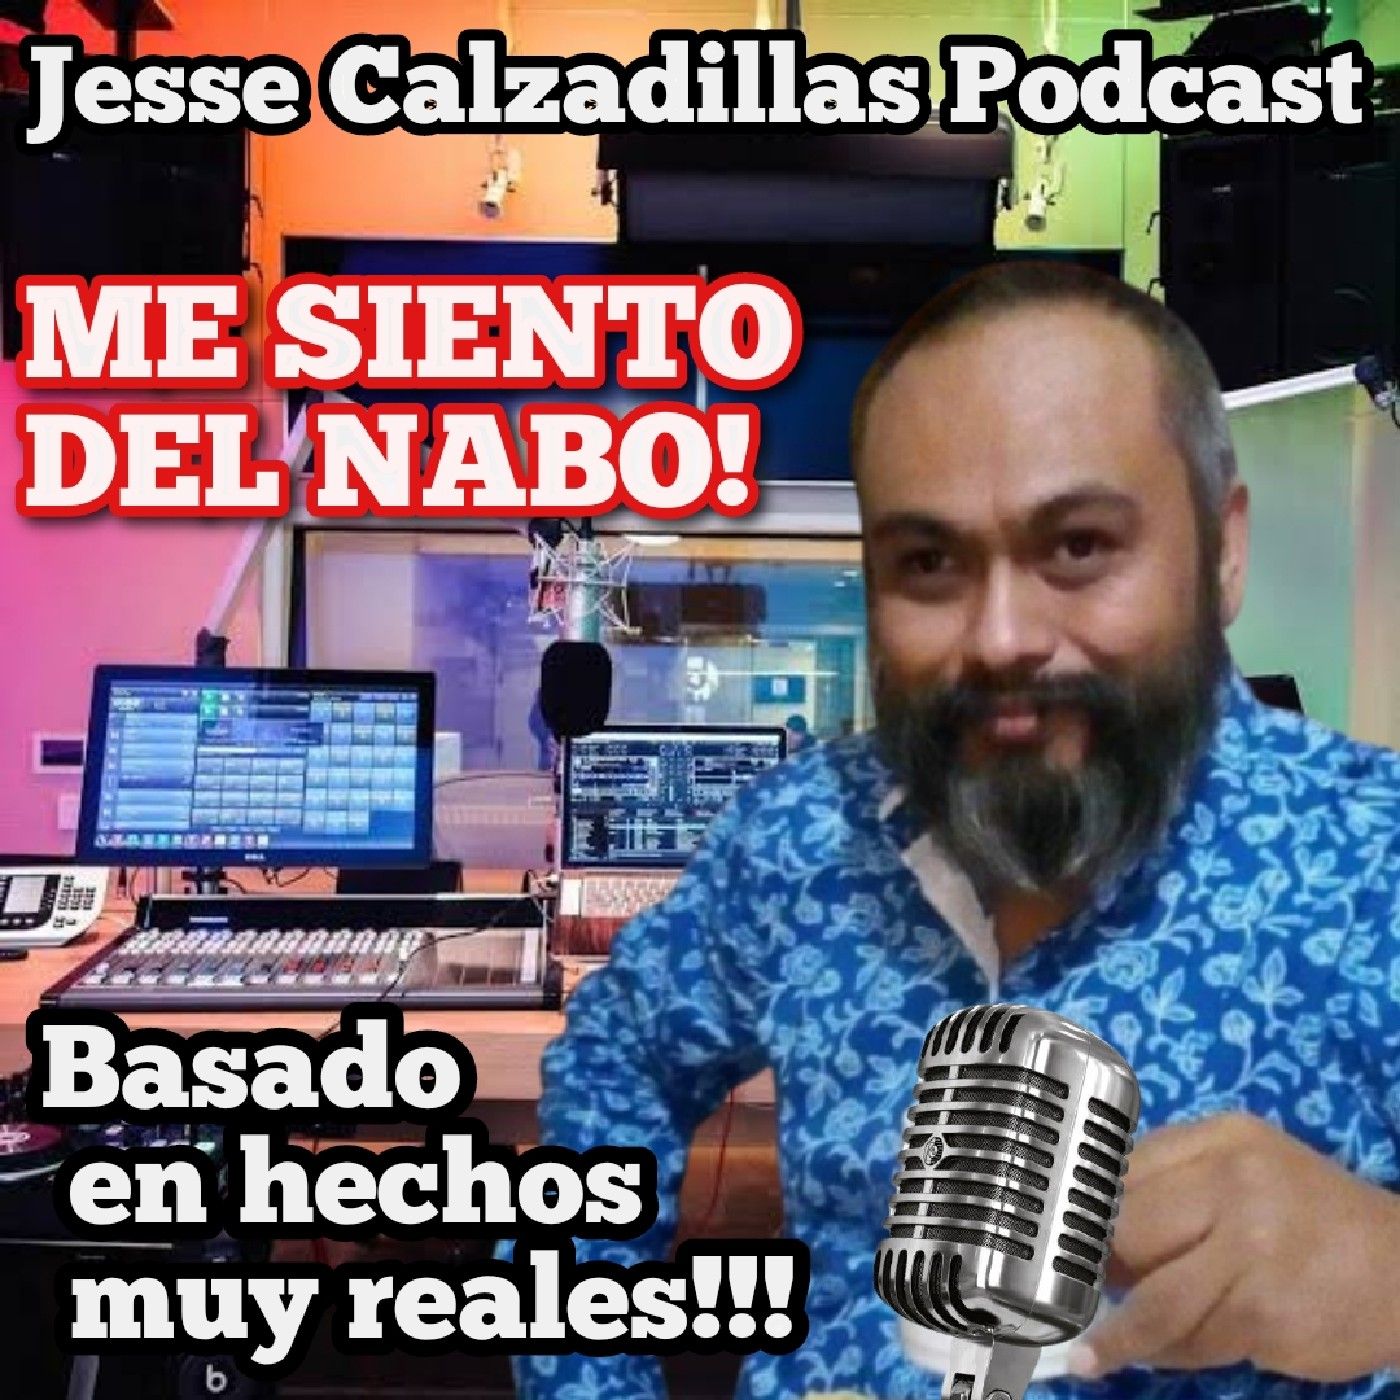 Jesse Calzadillas Podcast